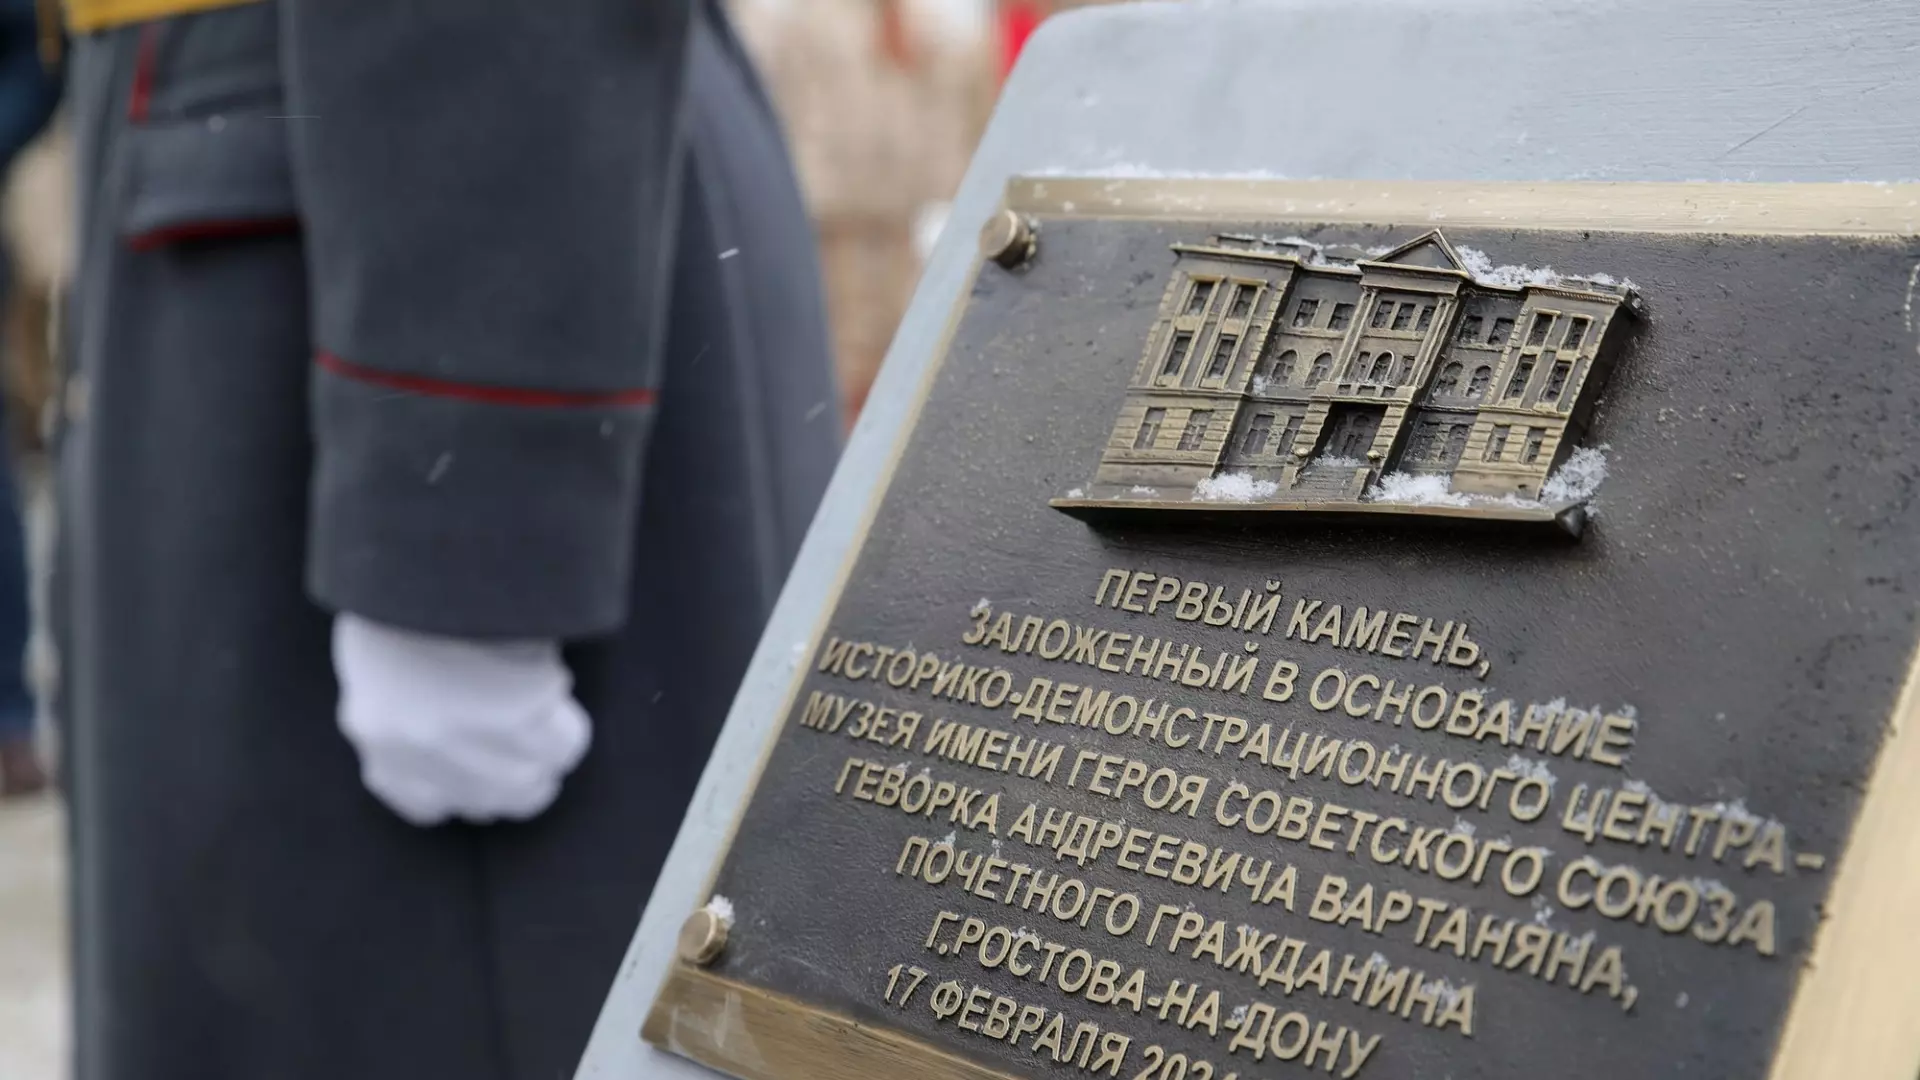 В Ростове заложили первый камень для музея имени разведчика Геворка Вартаняна